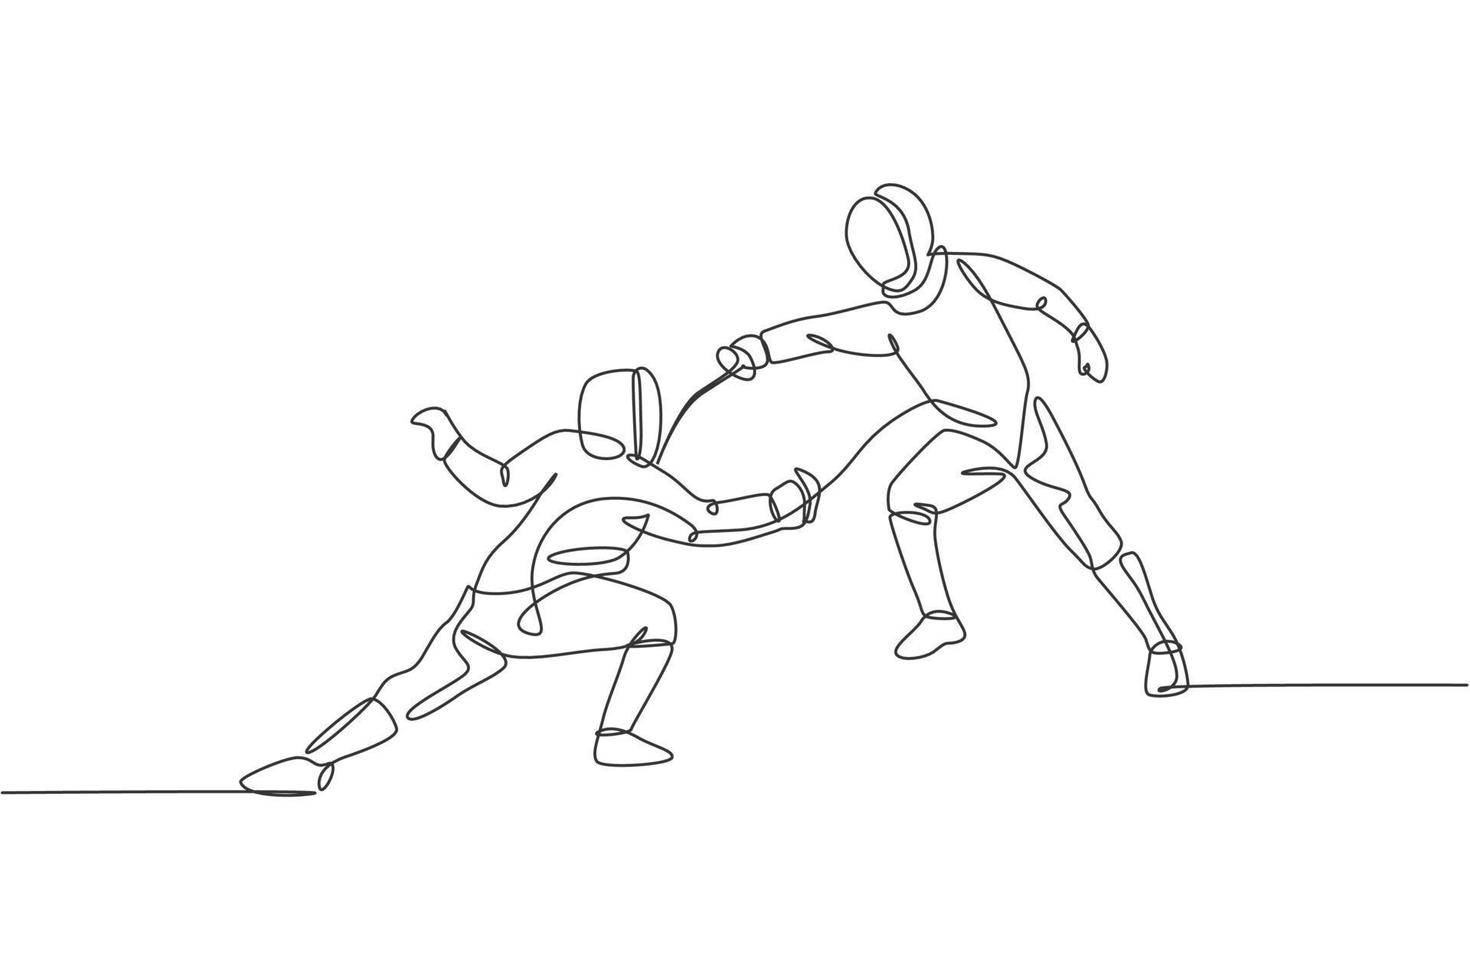 un disegno a linea continua di due giovani uomini che scherma atleta pratica l'azione di combattimento sull'arena sportiva. costume da scherma e concetto di spada in mano. illustrazione vettoriale dinamica del disegno a linea singola